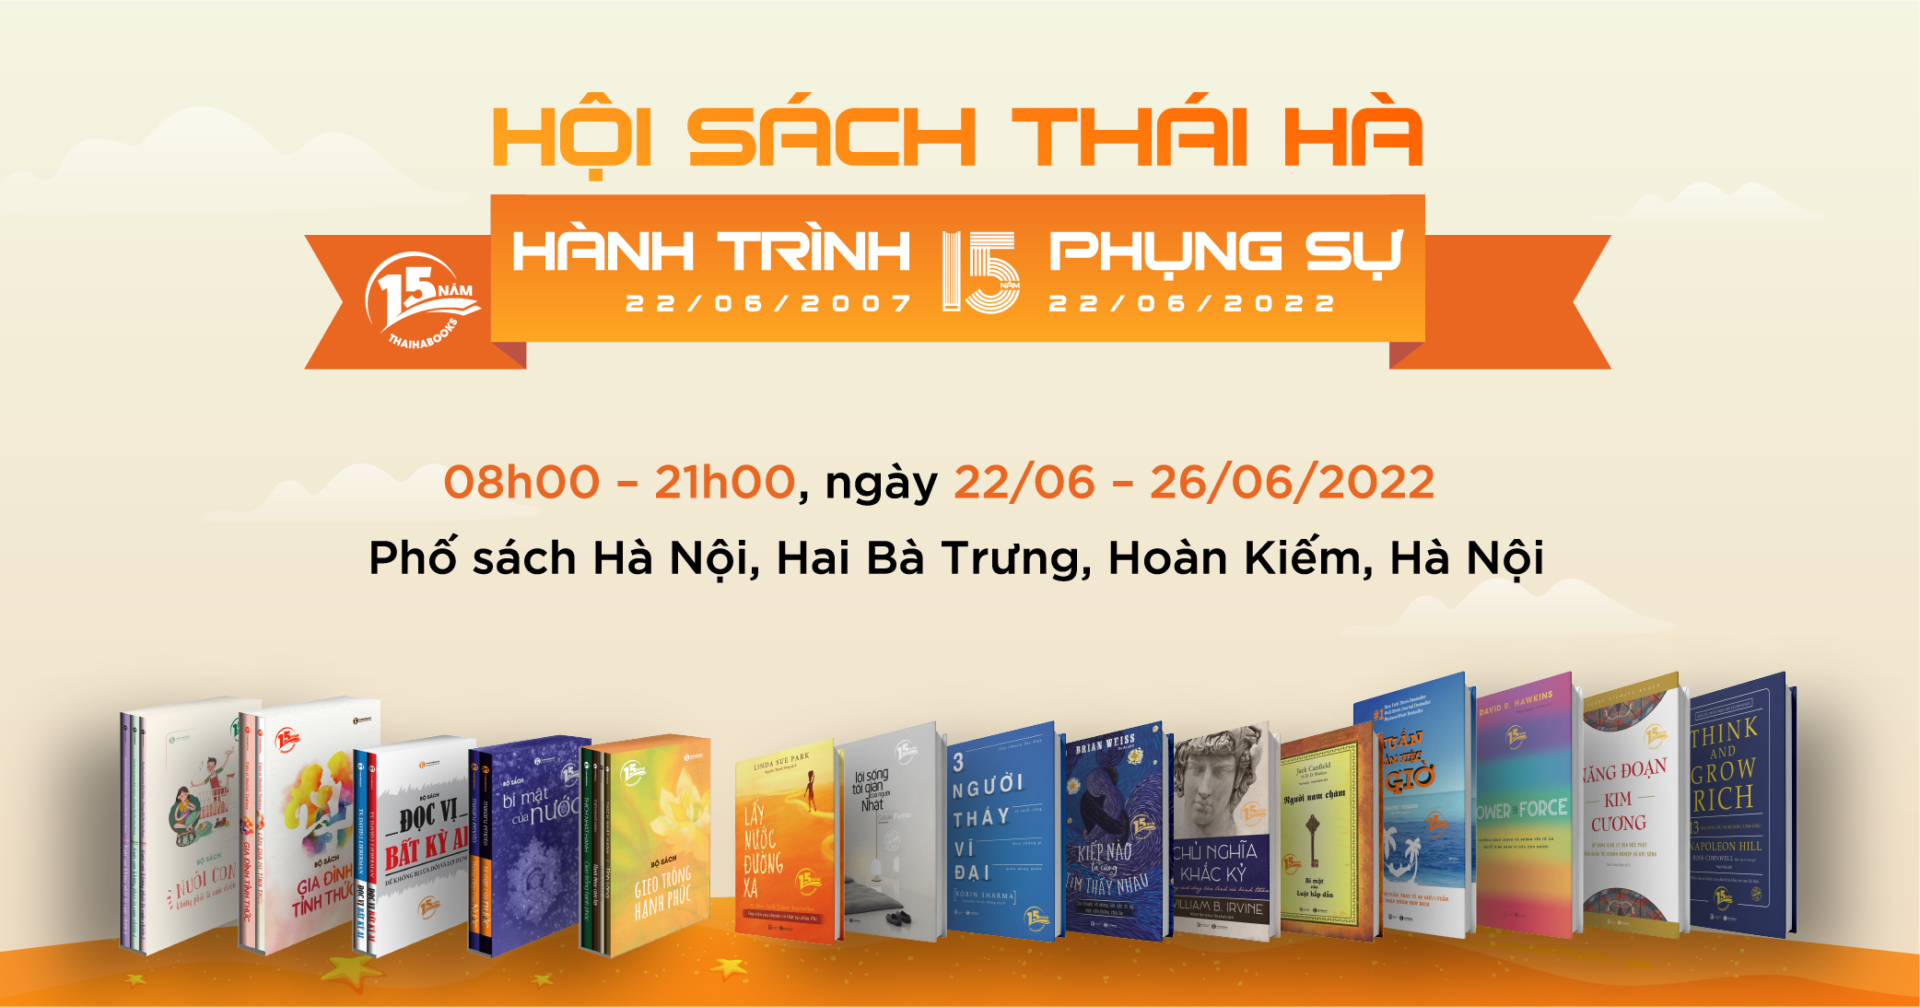 22-26/06: Hội sách Thái Hà tại Hà Nội